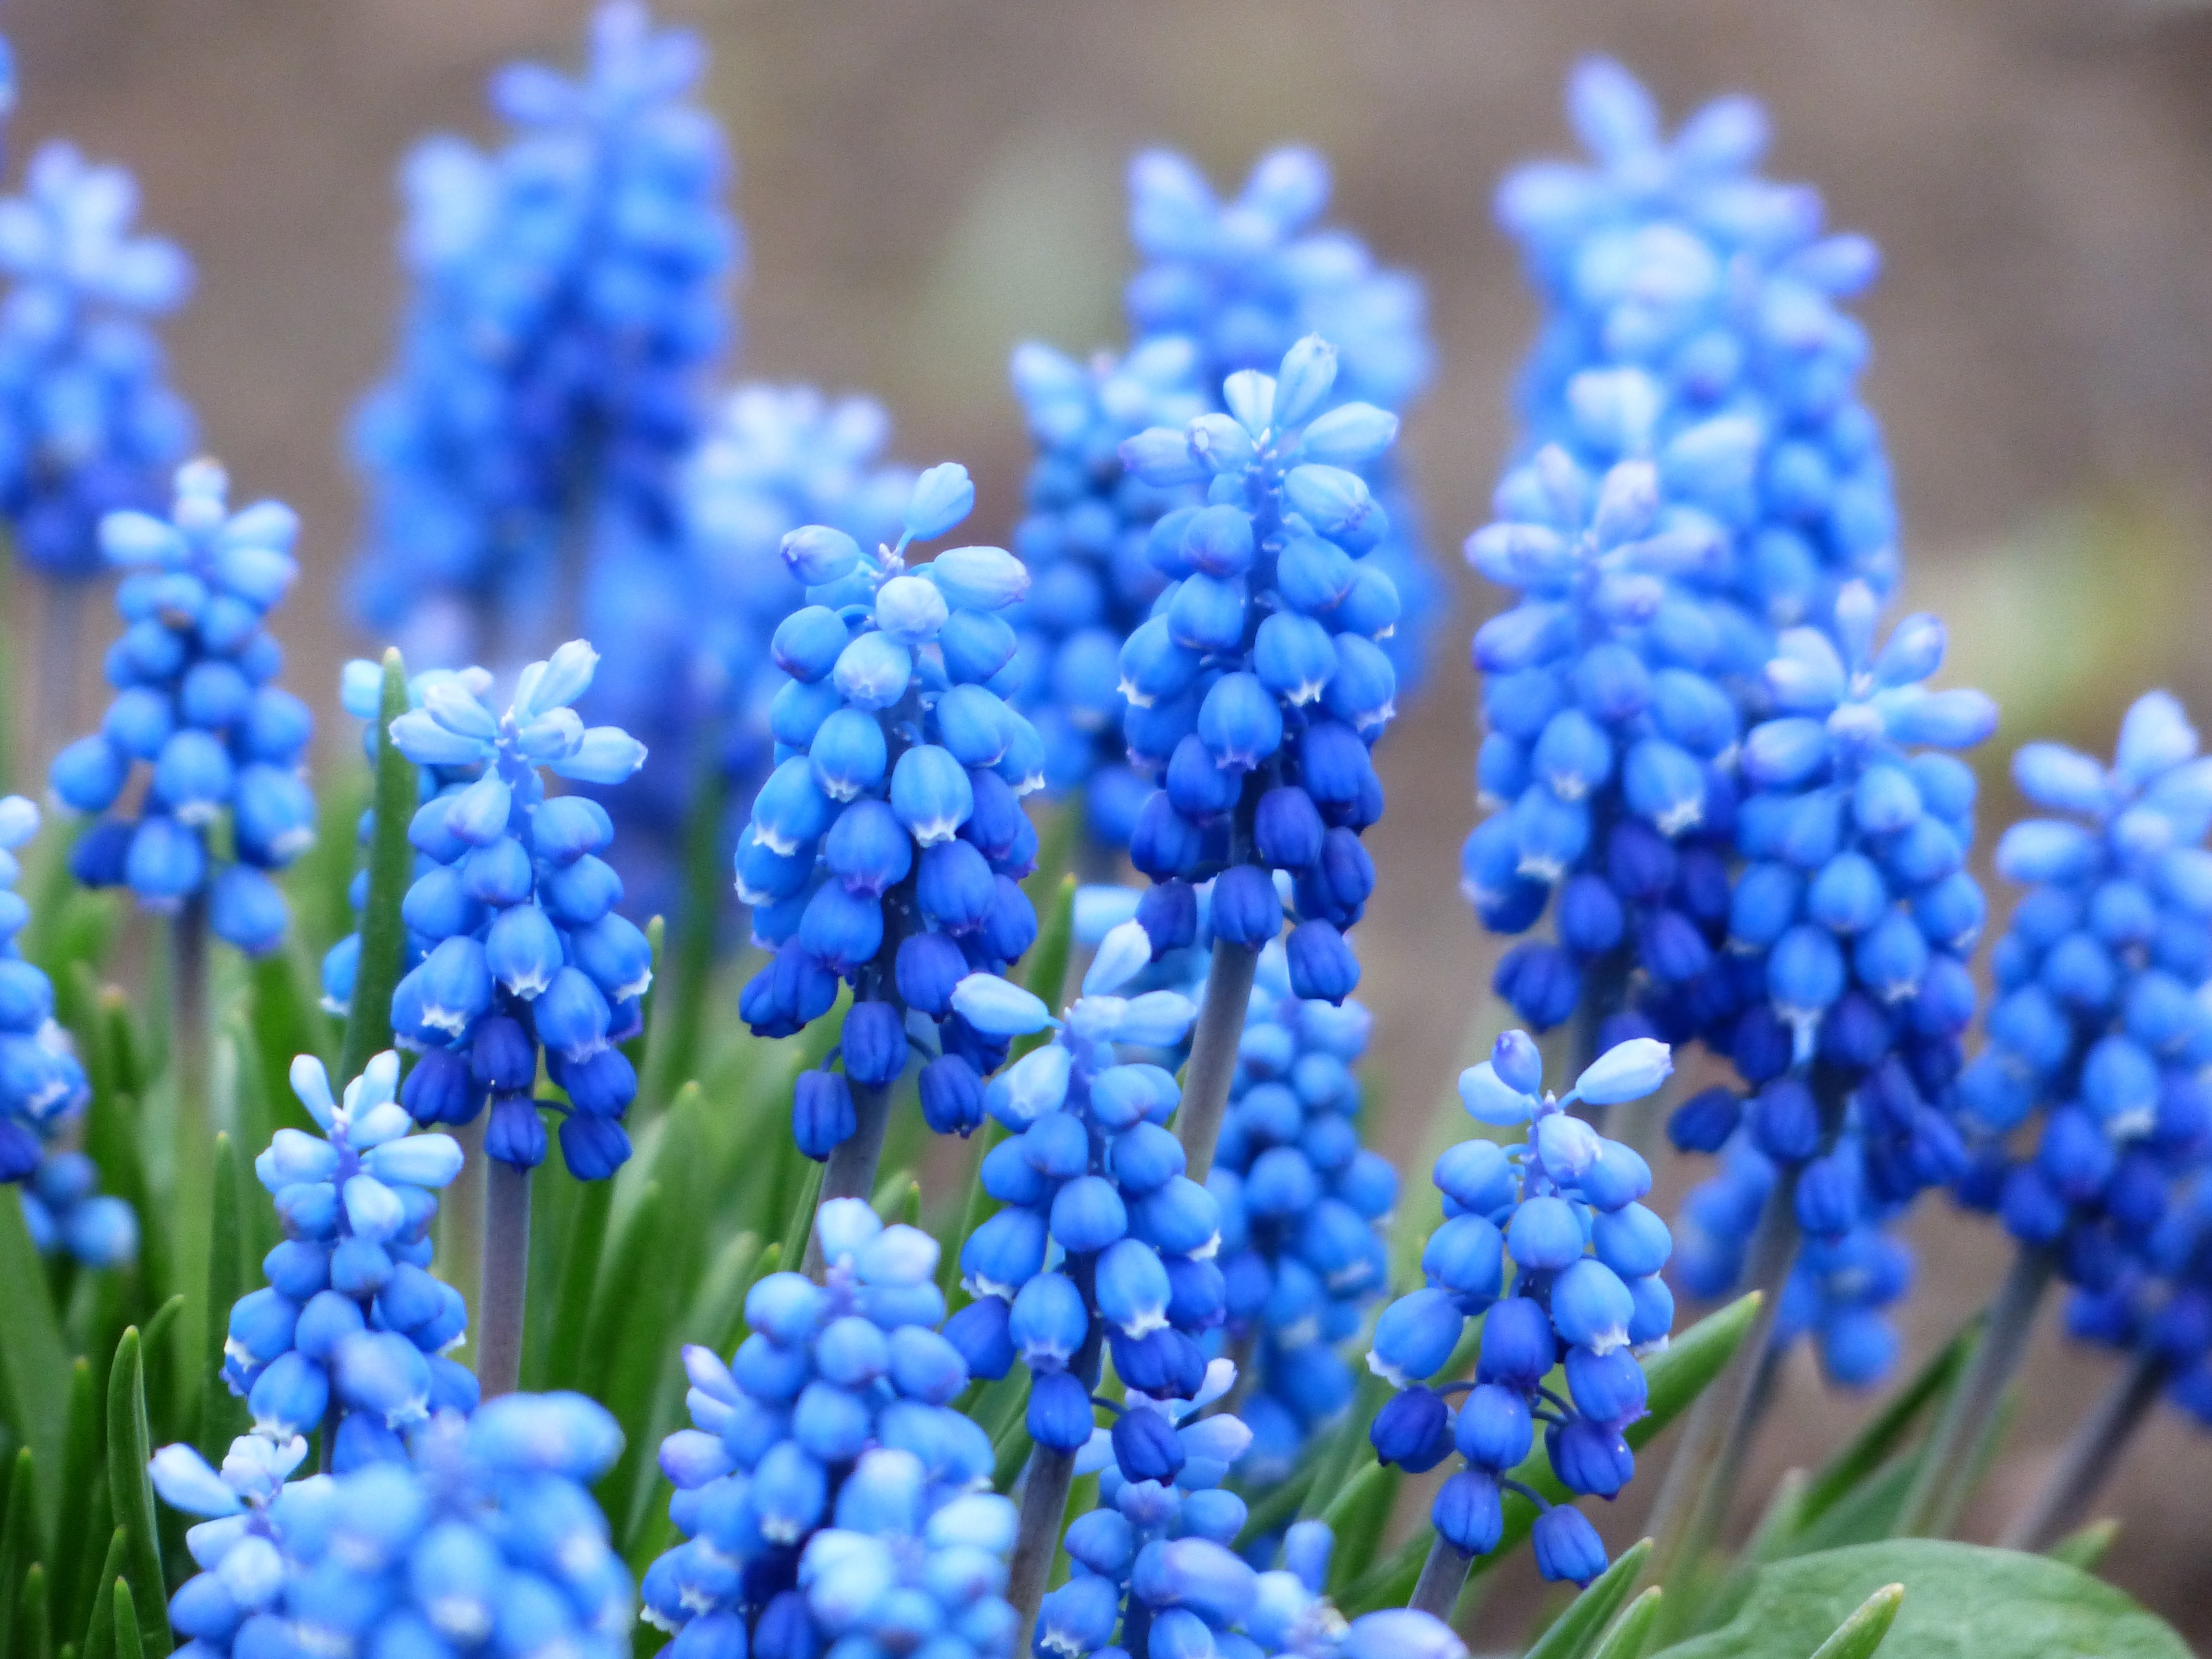 Blue unusual flowers